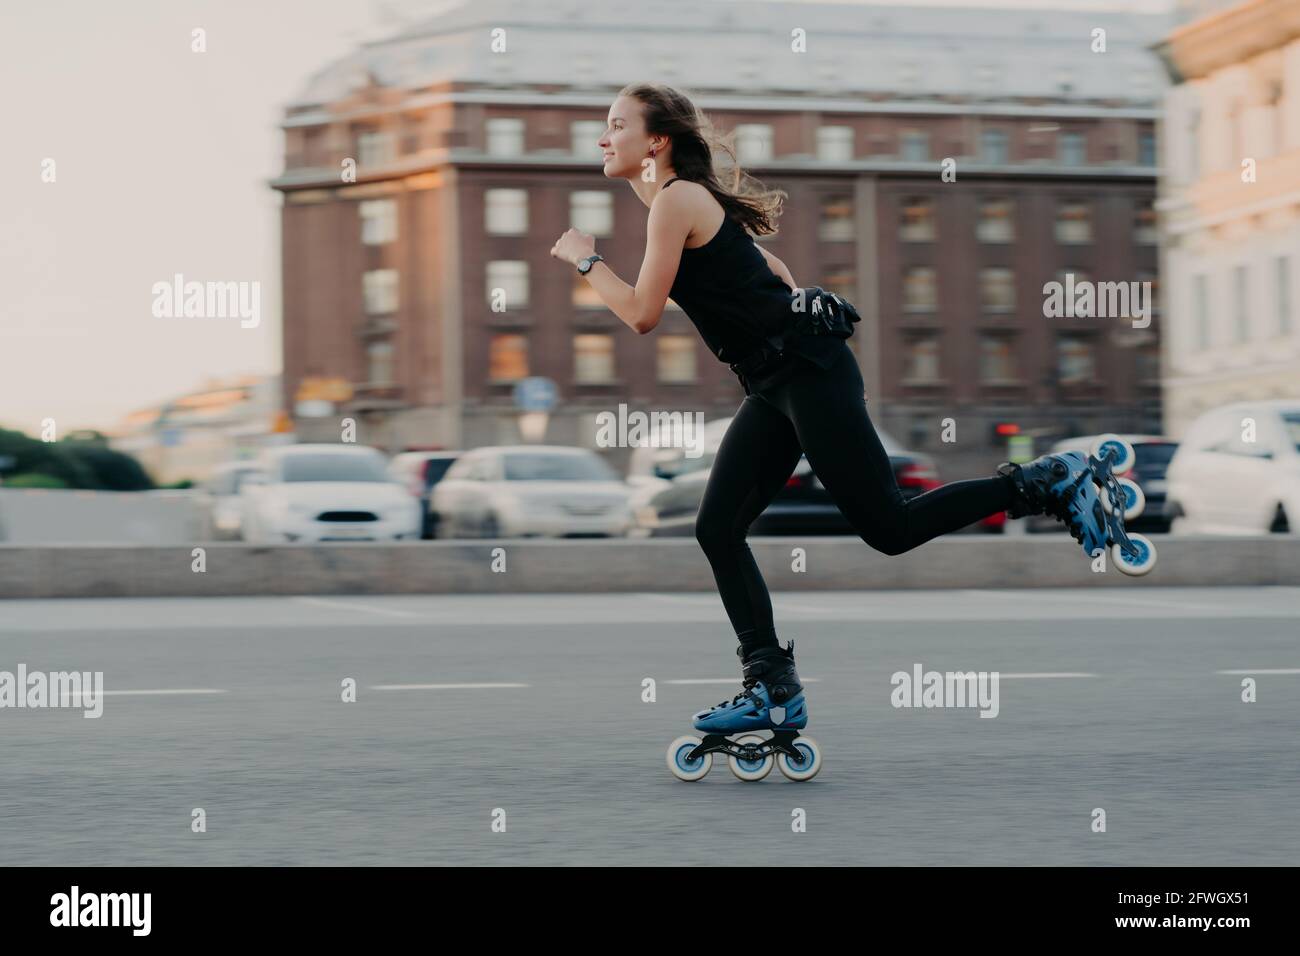 Mujer paseos en rodillos se mueve muy rápido vestido en activo la ropa disfruta el patinaje siendo fotografiada en acción poses en urbano lugar acoplado Foto de stock